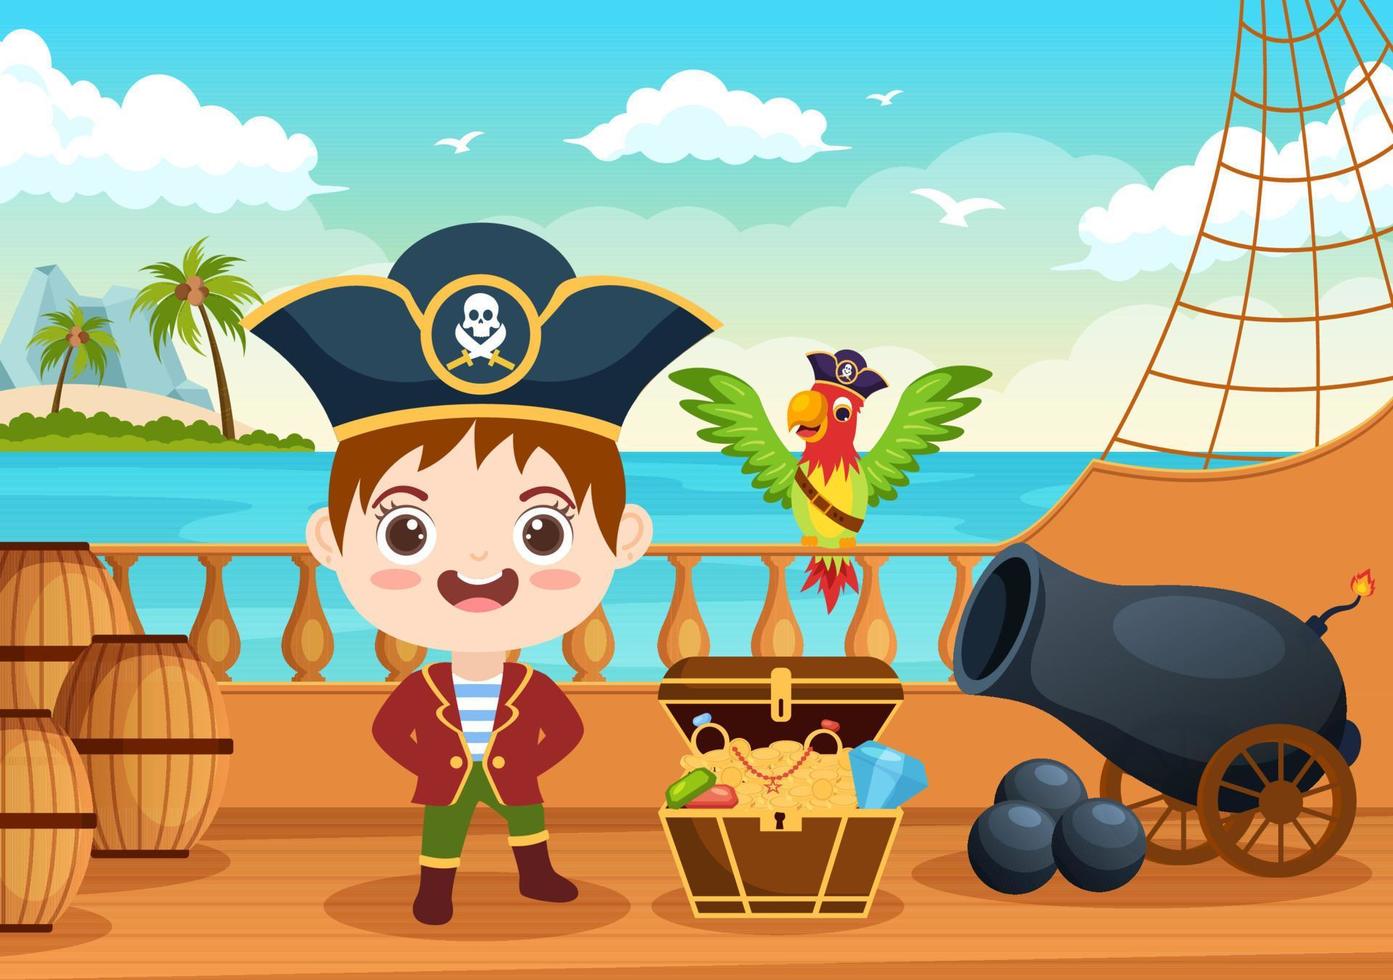 simpatico personaggio dei cartoni animati pirata illustrazione con ruota di legno, petto, caraibi vintage, pirati e jolly roger sulla nave sul mare o sull'isola vettore